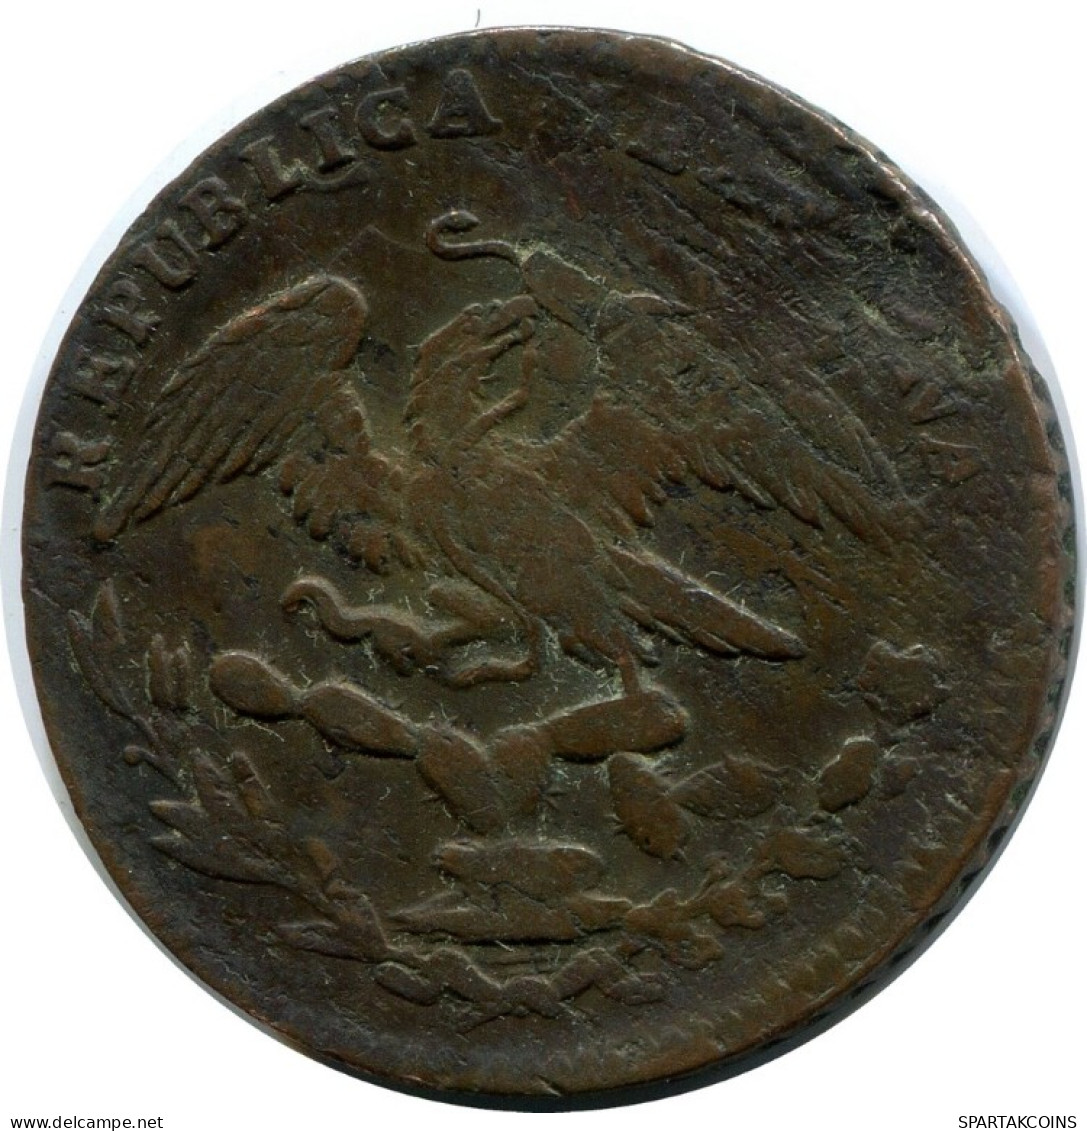 1/4 REAL 1835 MA "Quarto/Quartilla" MEXICO Coin #AH387.5.U.A - Mexiko